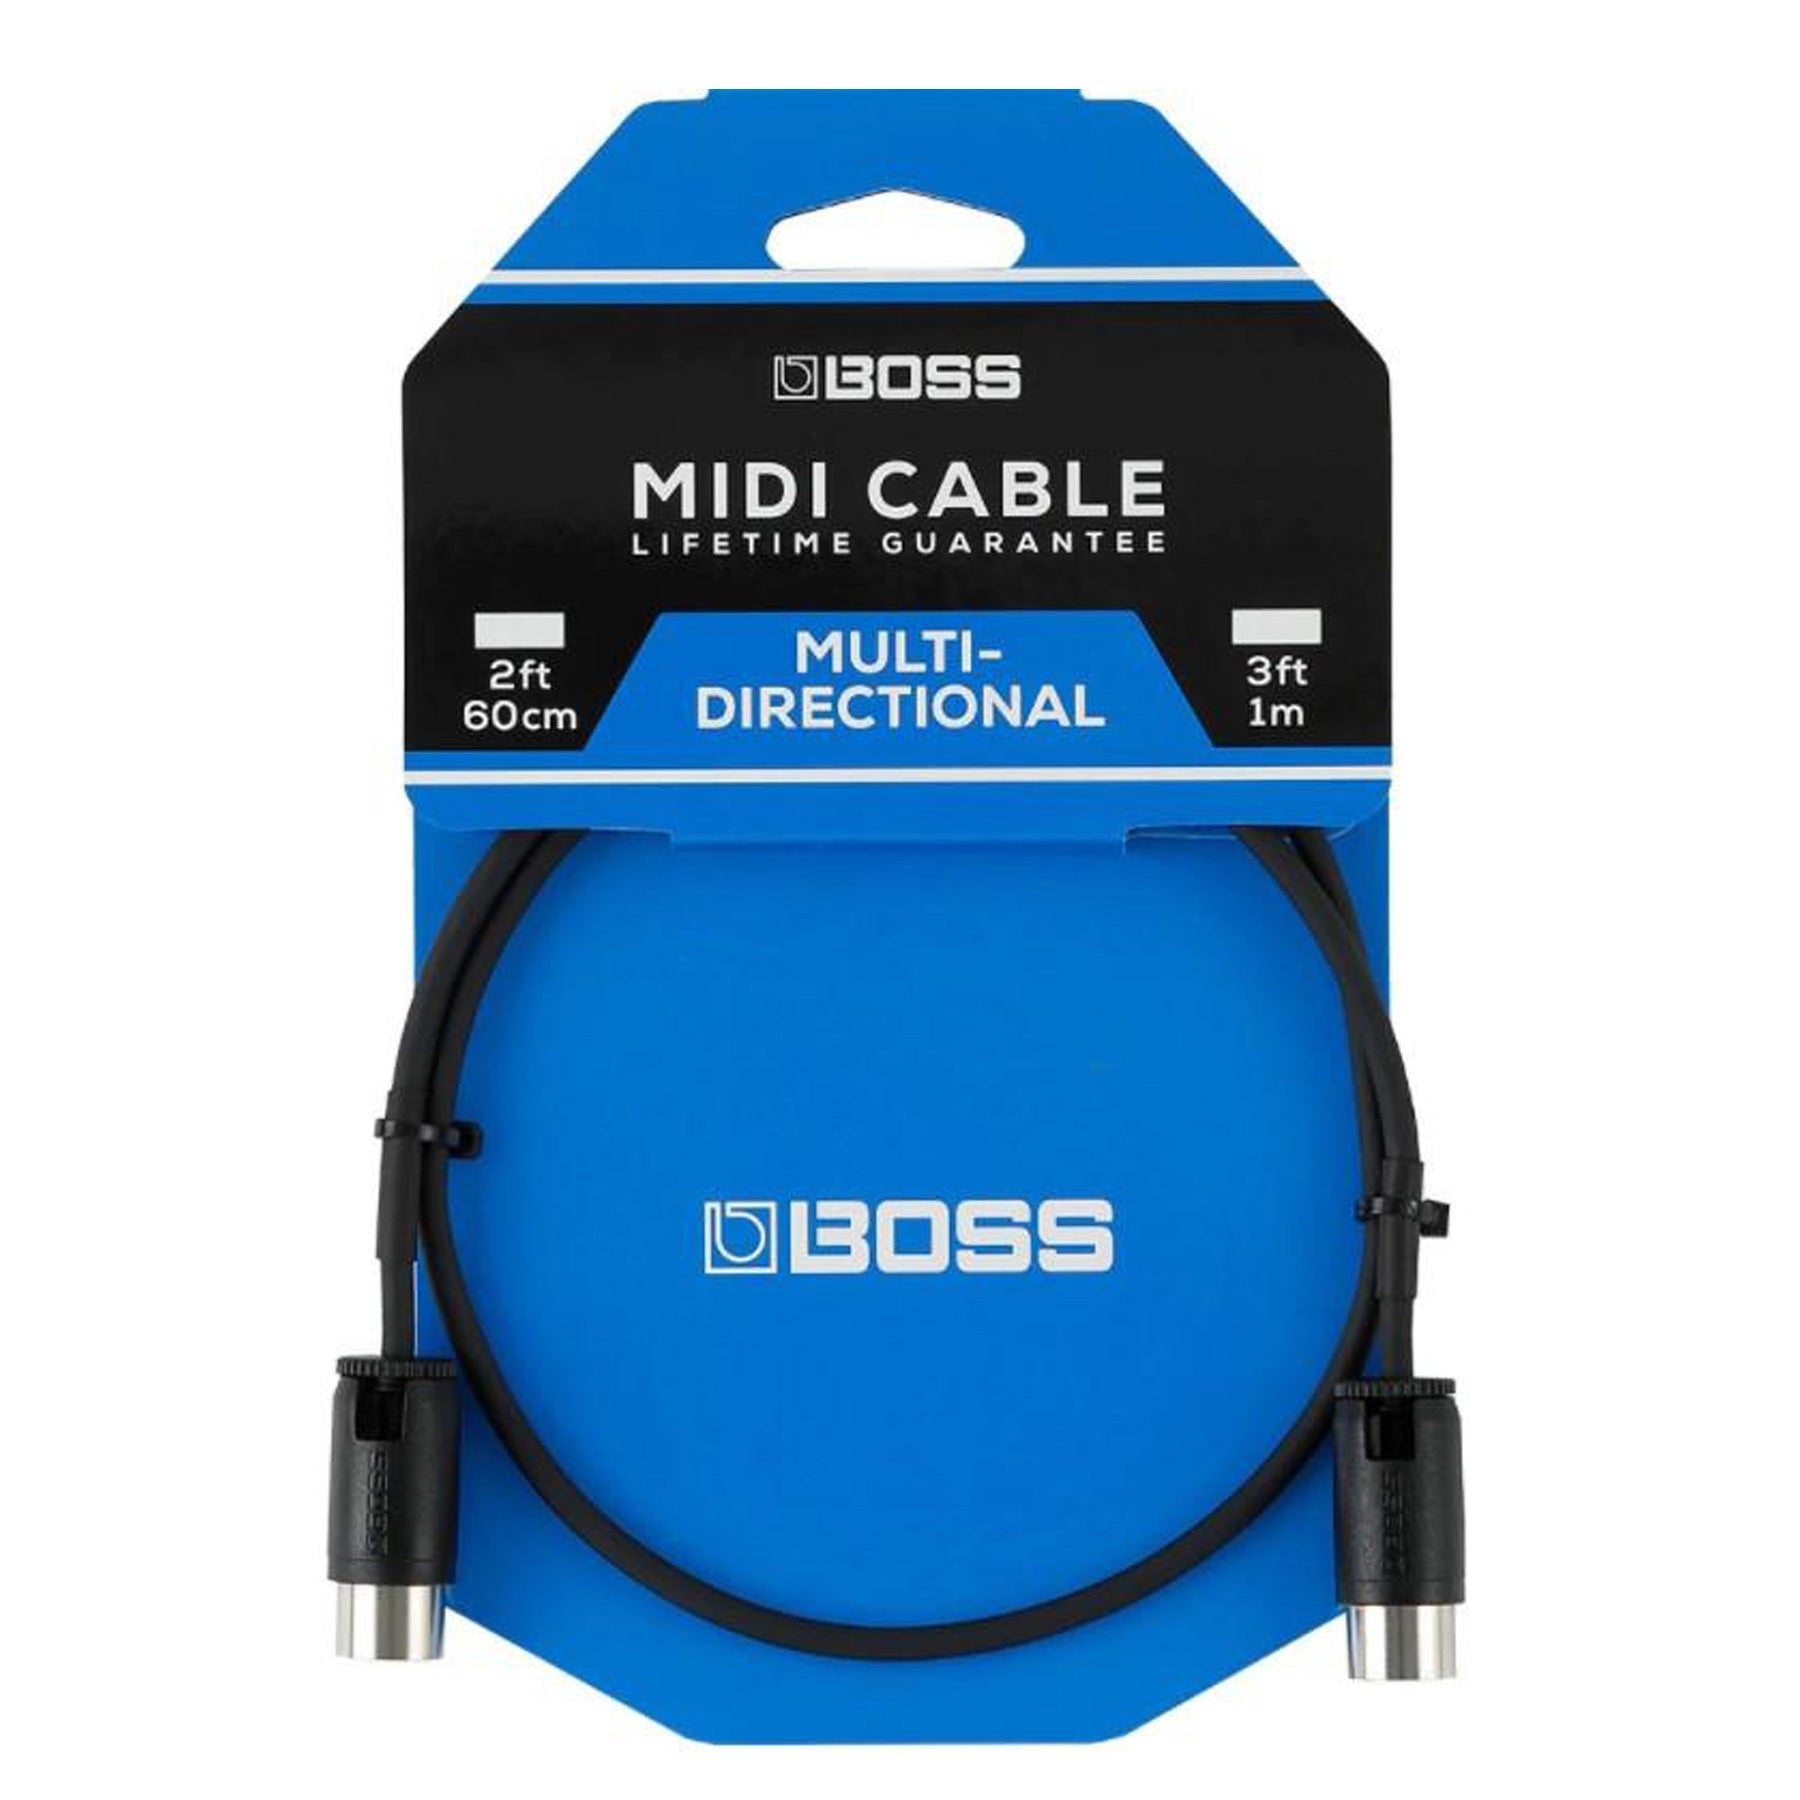 BOSS BMIDI-PB3 3' MULTI DIRECTIONAL MIDI CABLE